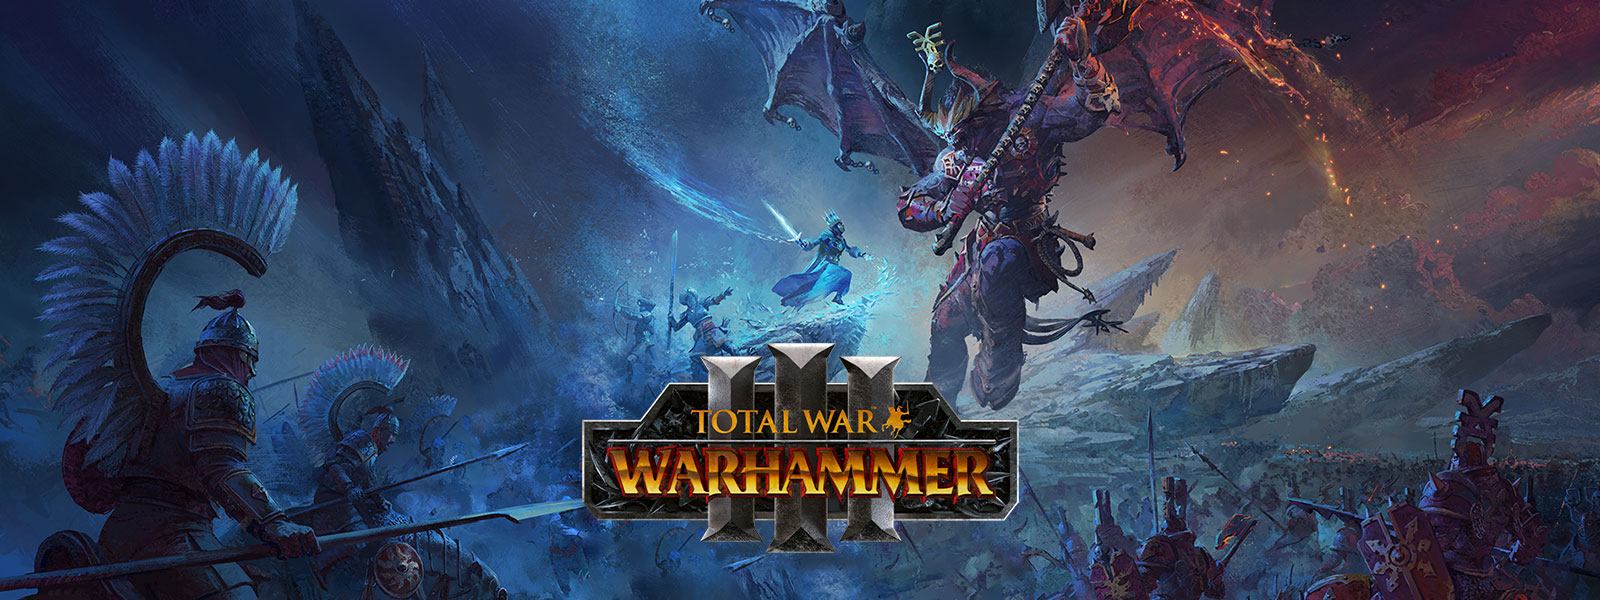 Total War Warhammer 3, Een ijstovenaar neemt het op tegen een gigantische drakendemon boven een slagveld.